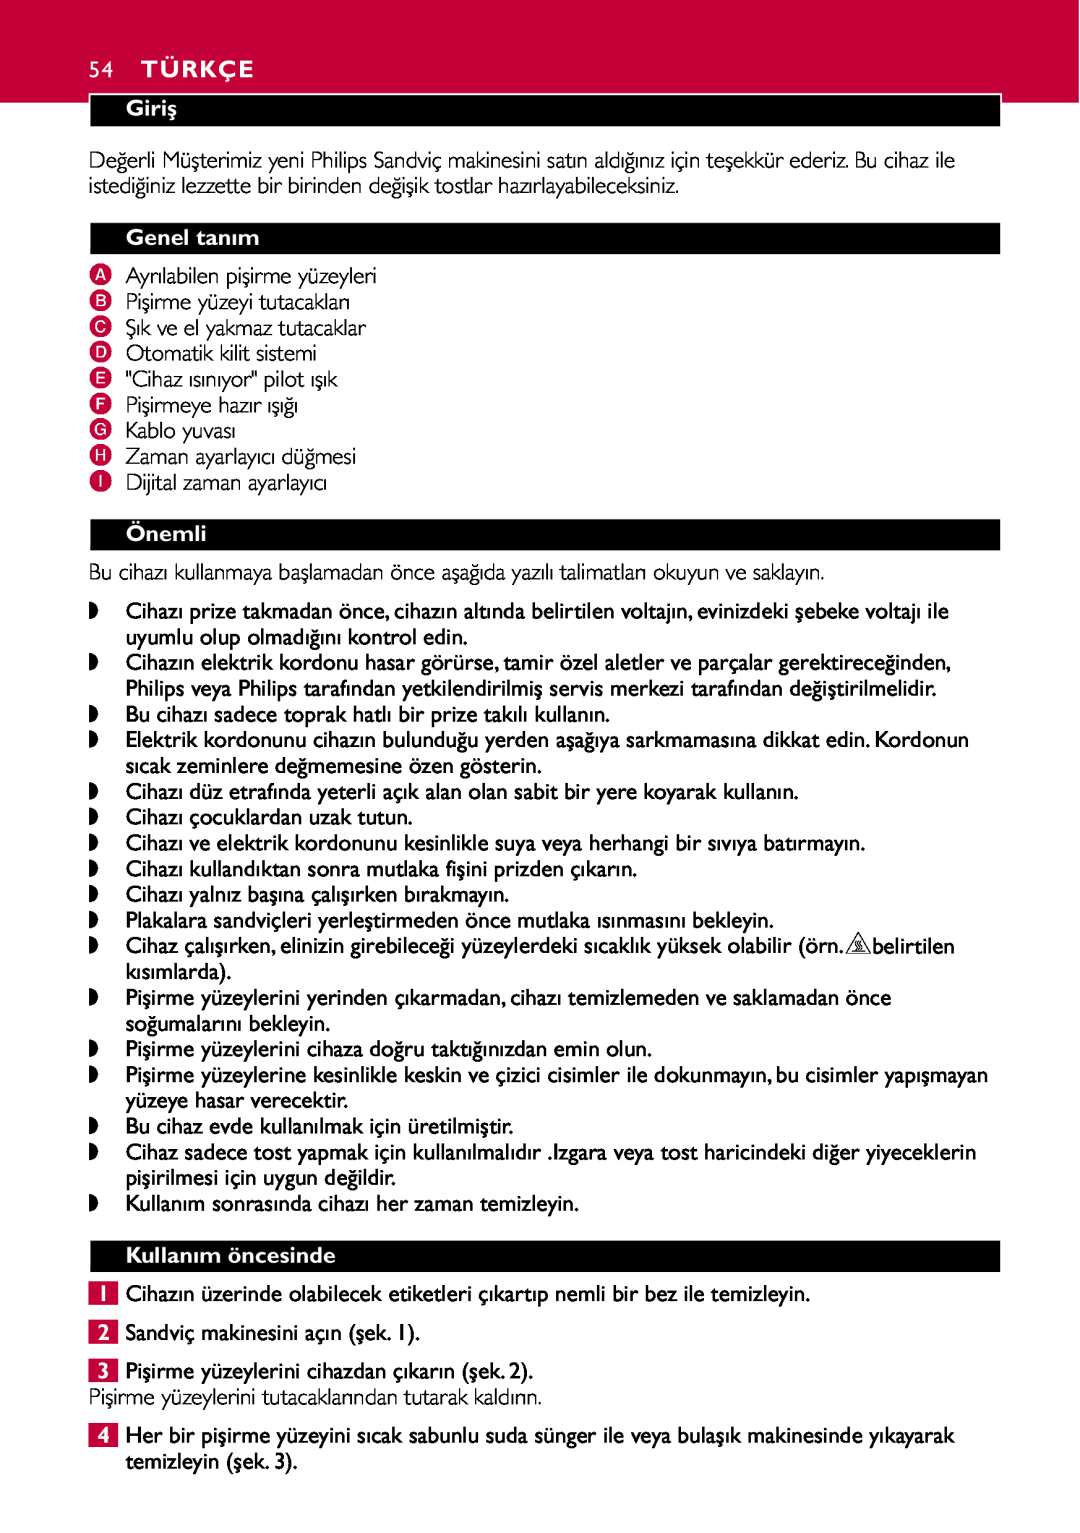 Philips HD2415 manual 54 TÜRKÇE, Giriş, Genel tanım, Önemli, Kullanım öncesinde 